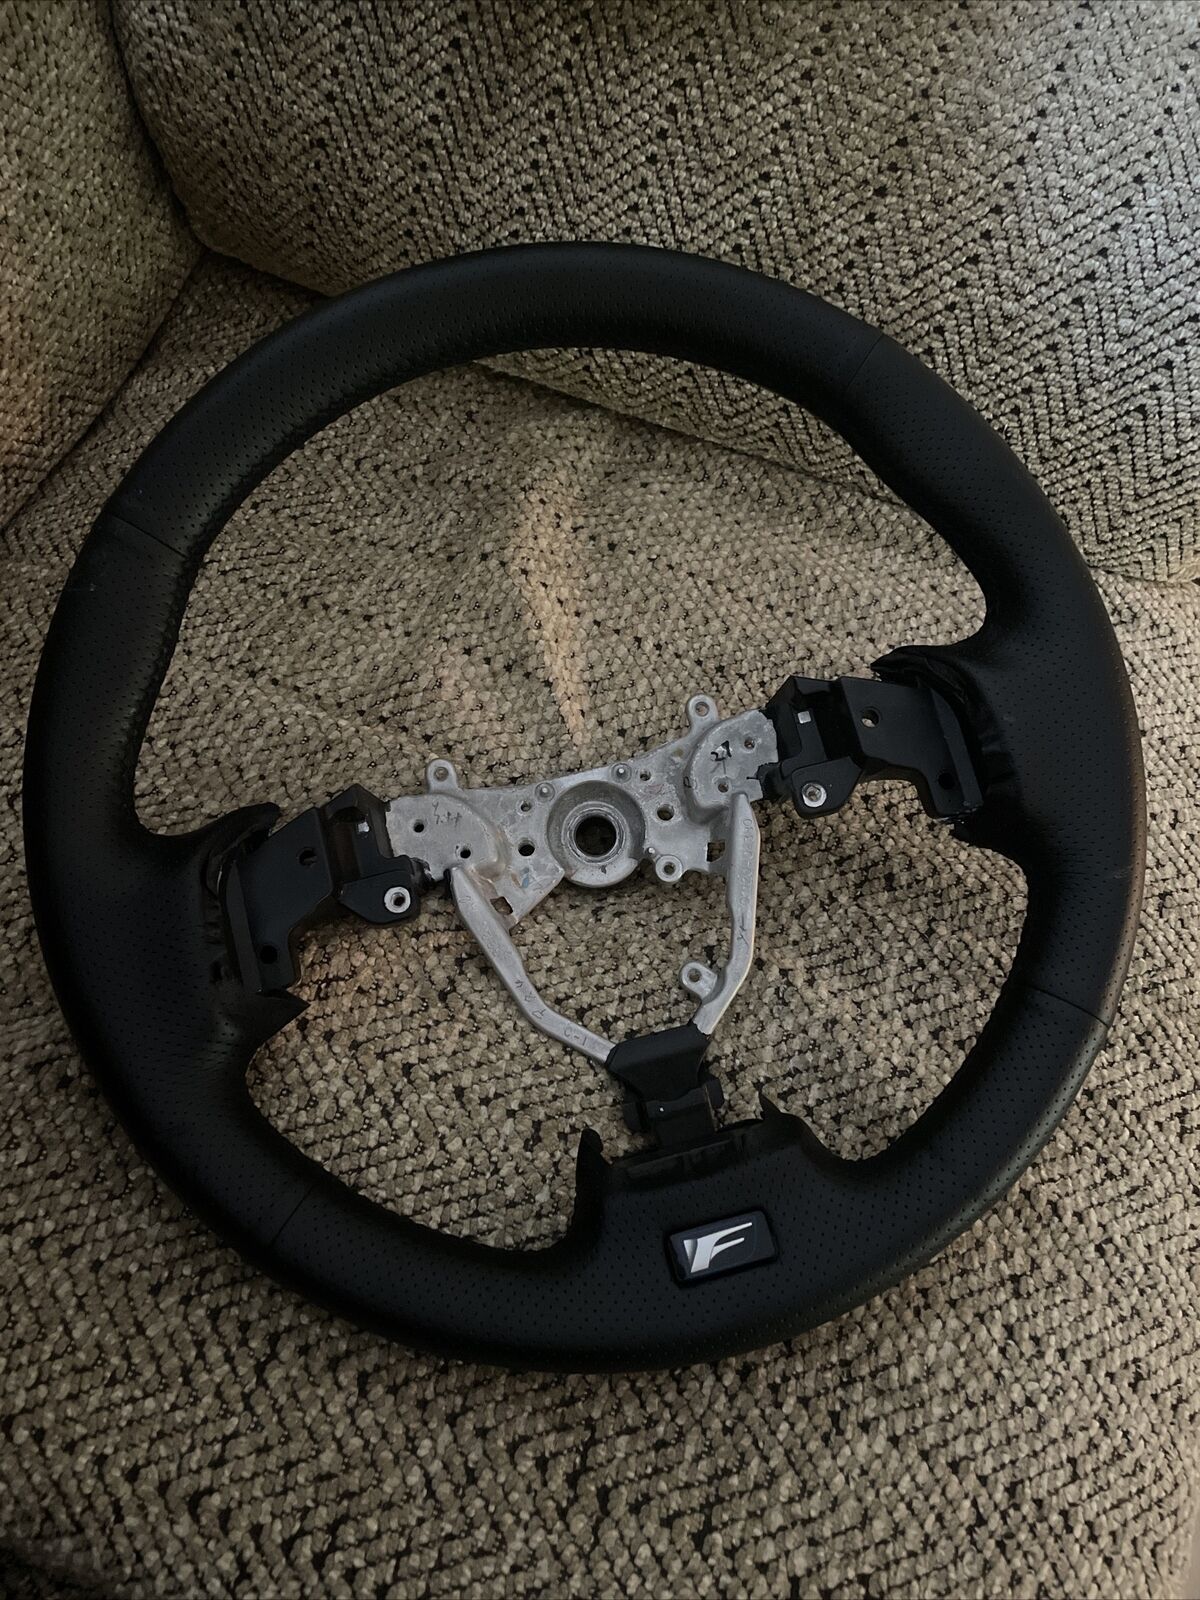 Lexus IS IS-F 13 Steering wheel fits 08-13 OEM wheel rewrapped black leather